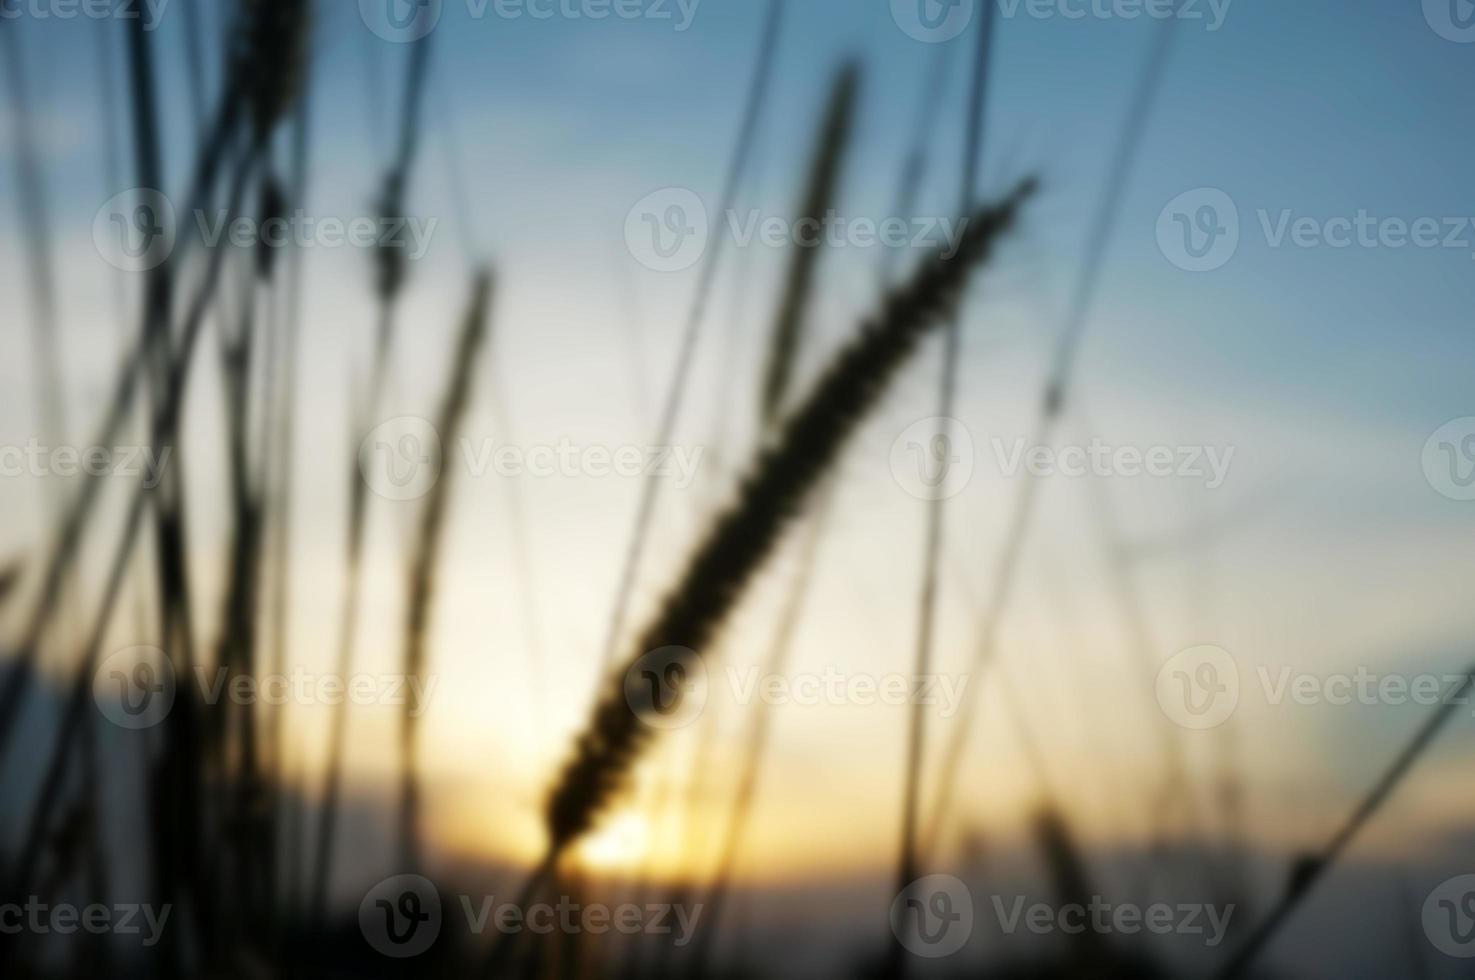 defocused trockene Grashalme, die im Wind wehen, bei goldenem Sonnenuntergang, Licht horizontal verschwommen, unscharf foto